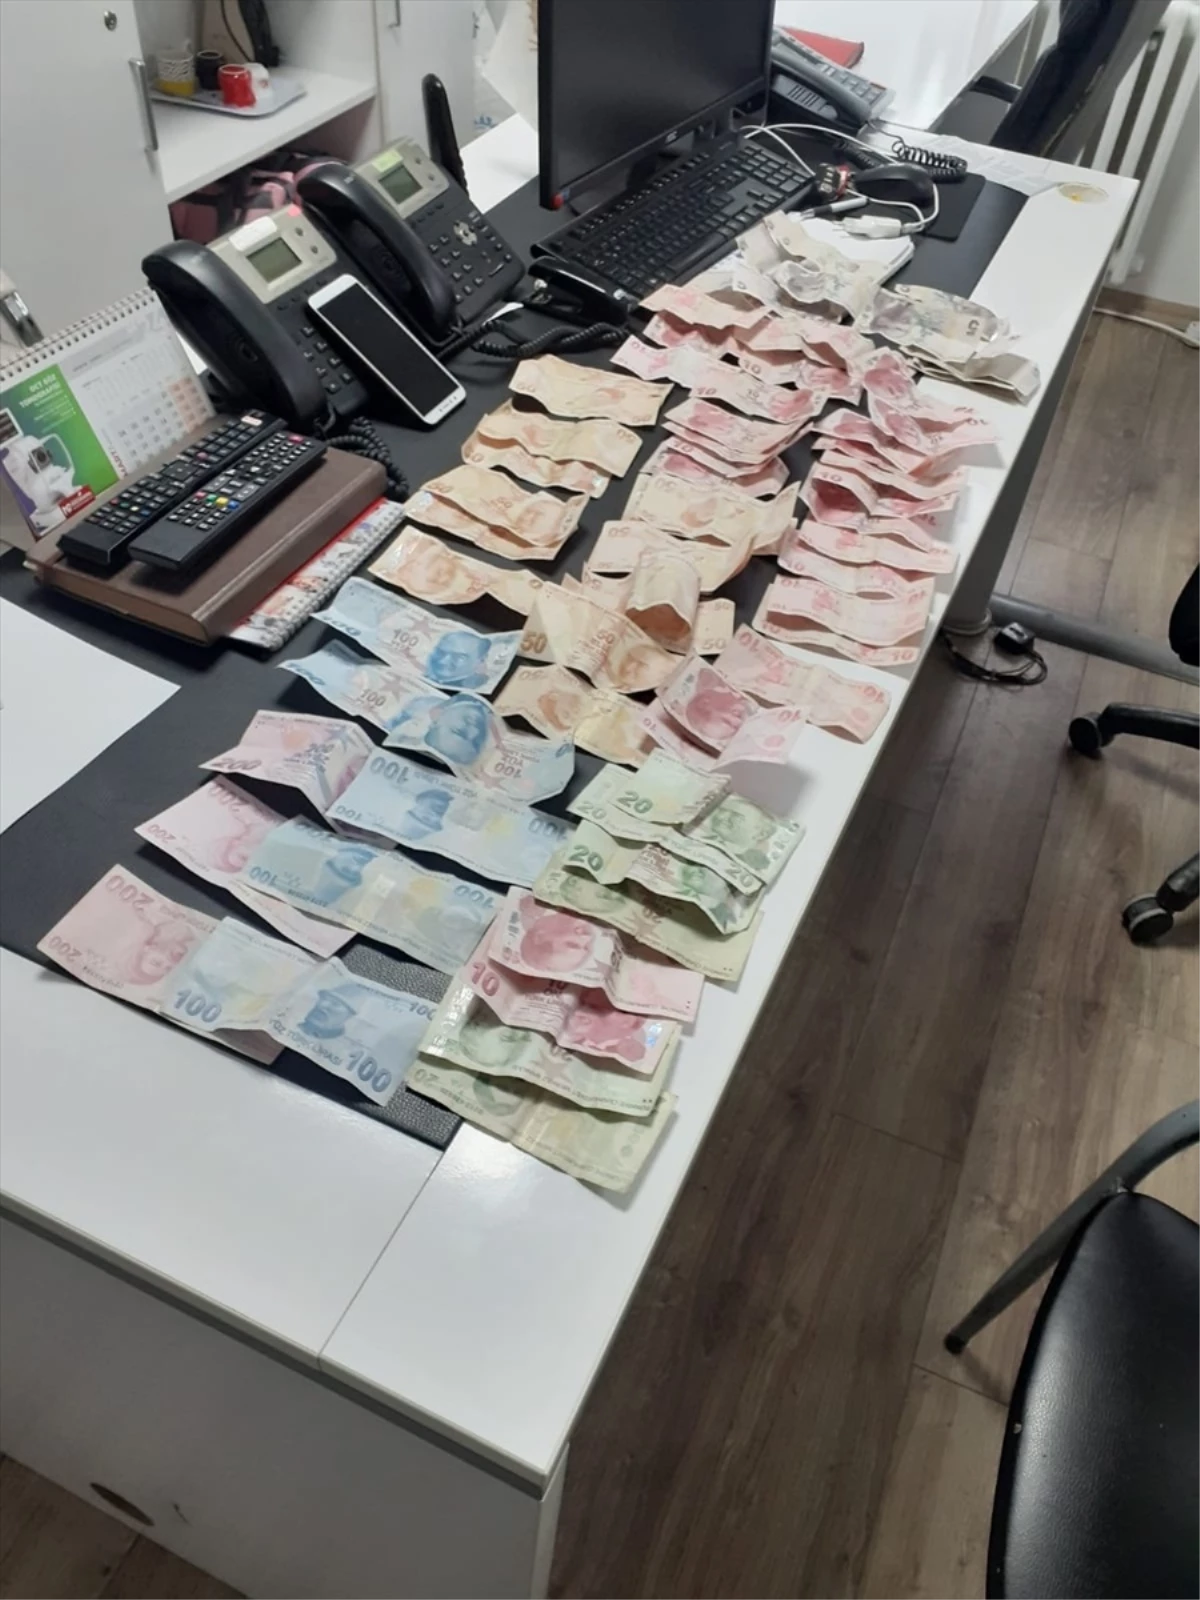 Sinop'un Gerze ilçesinde dilenciye yapılan işlemde 2 bin 500 lira bulundu